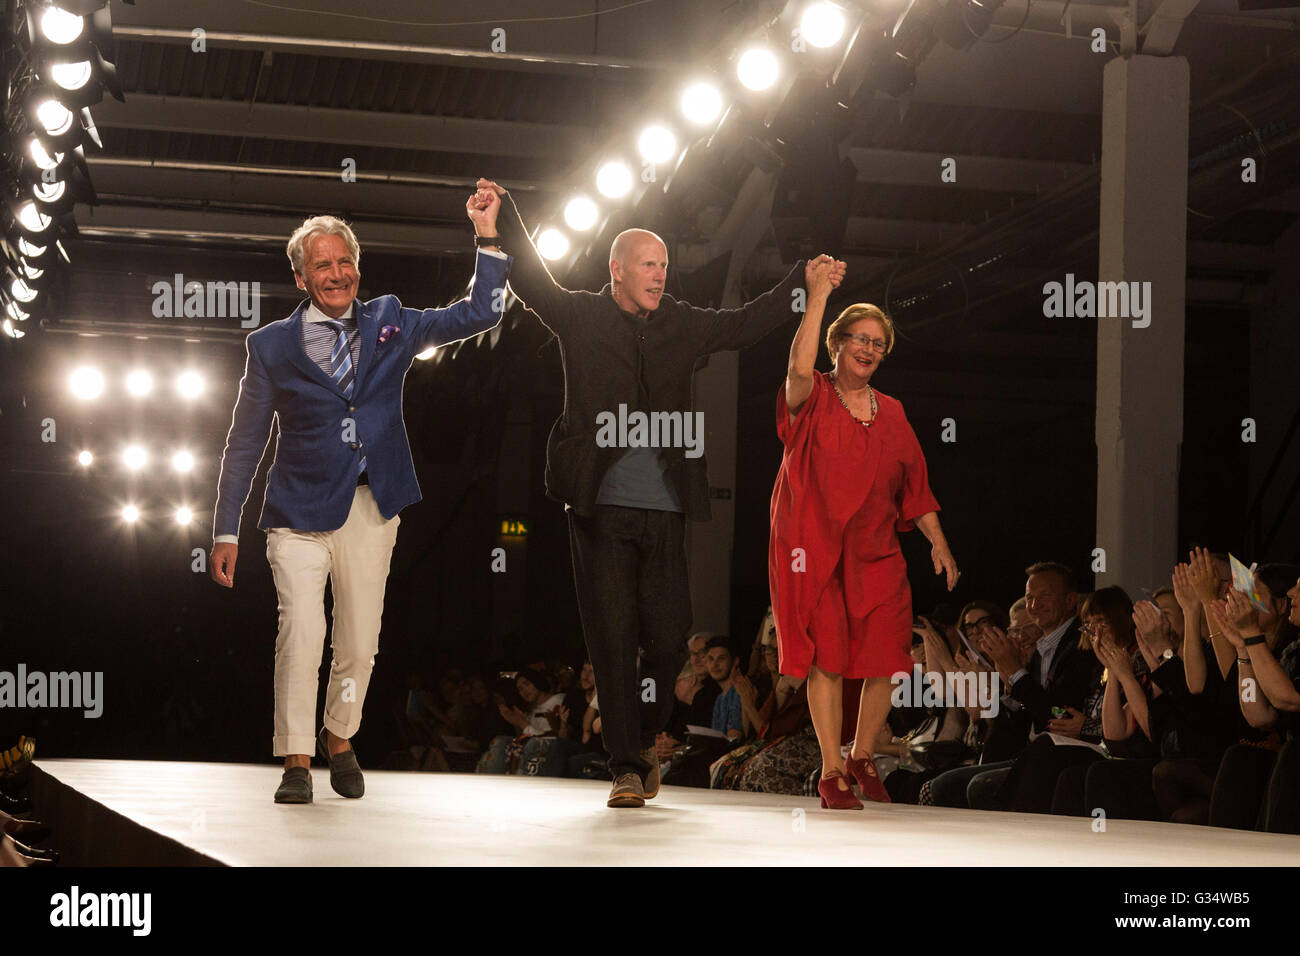 Londra, Regno Unito. 8 Giugno 2016. (L-R) Jeff banche, John Walford e Vanessa Denza che ha co-fondato Graduate Fashion Week nel 1989 riceve un Lifetime Achievement Award. Credito: CatwalkFashion/Alamy Live News Foto Stock